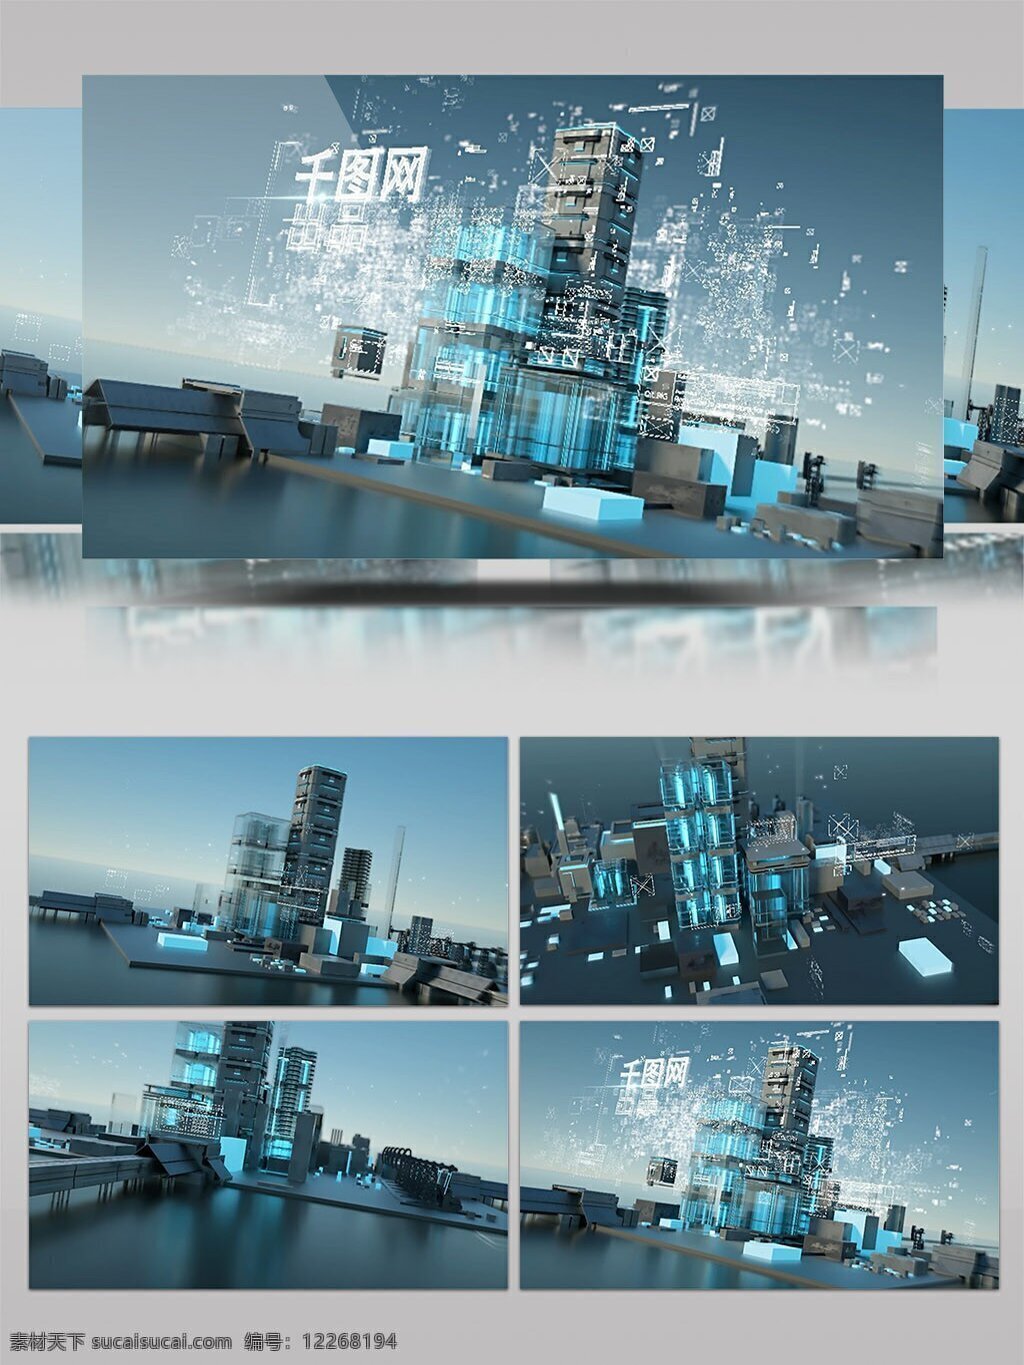 未来派 全息 科技 建筑 3d 动画 展示 ae 模板 房地产 高楼大厦 玻璃 线条 经济 技术 hud 3d效果 片头